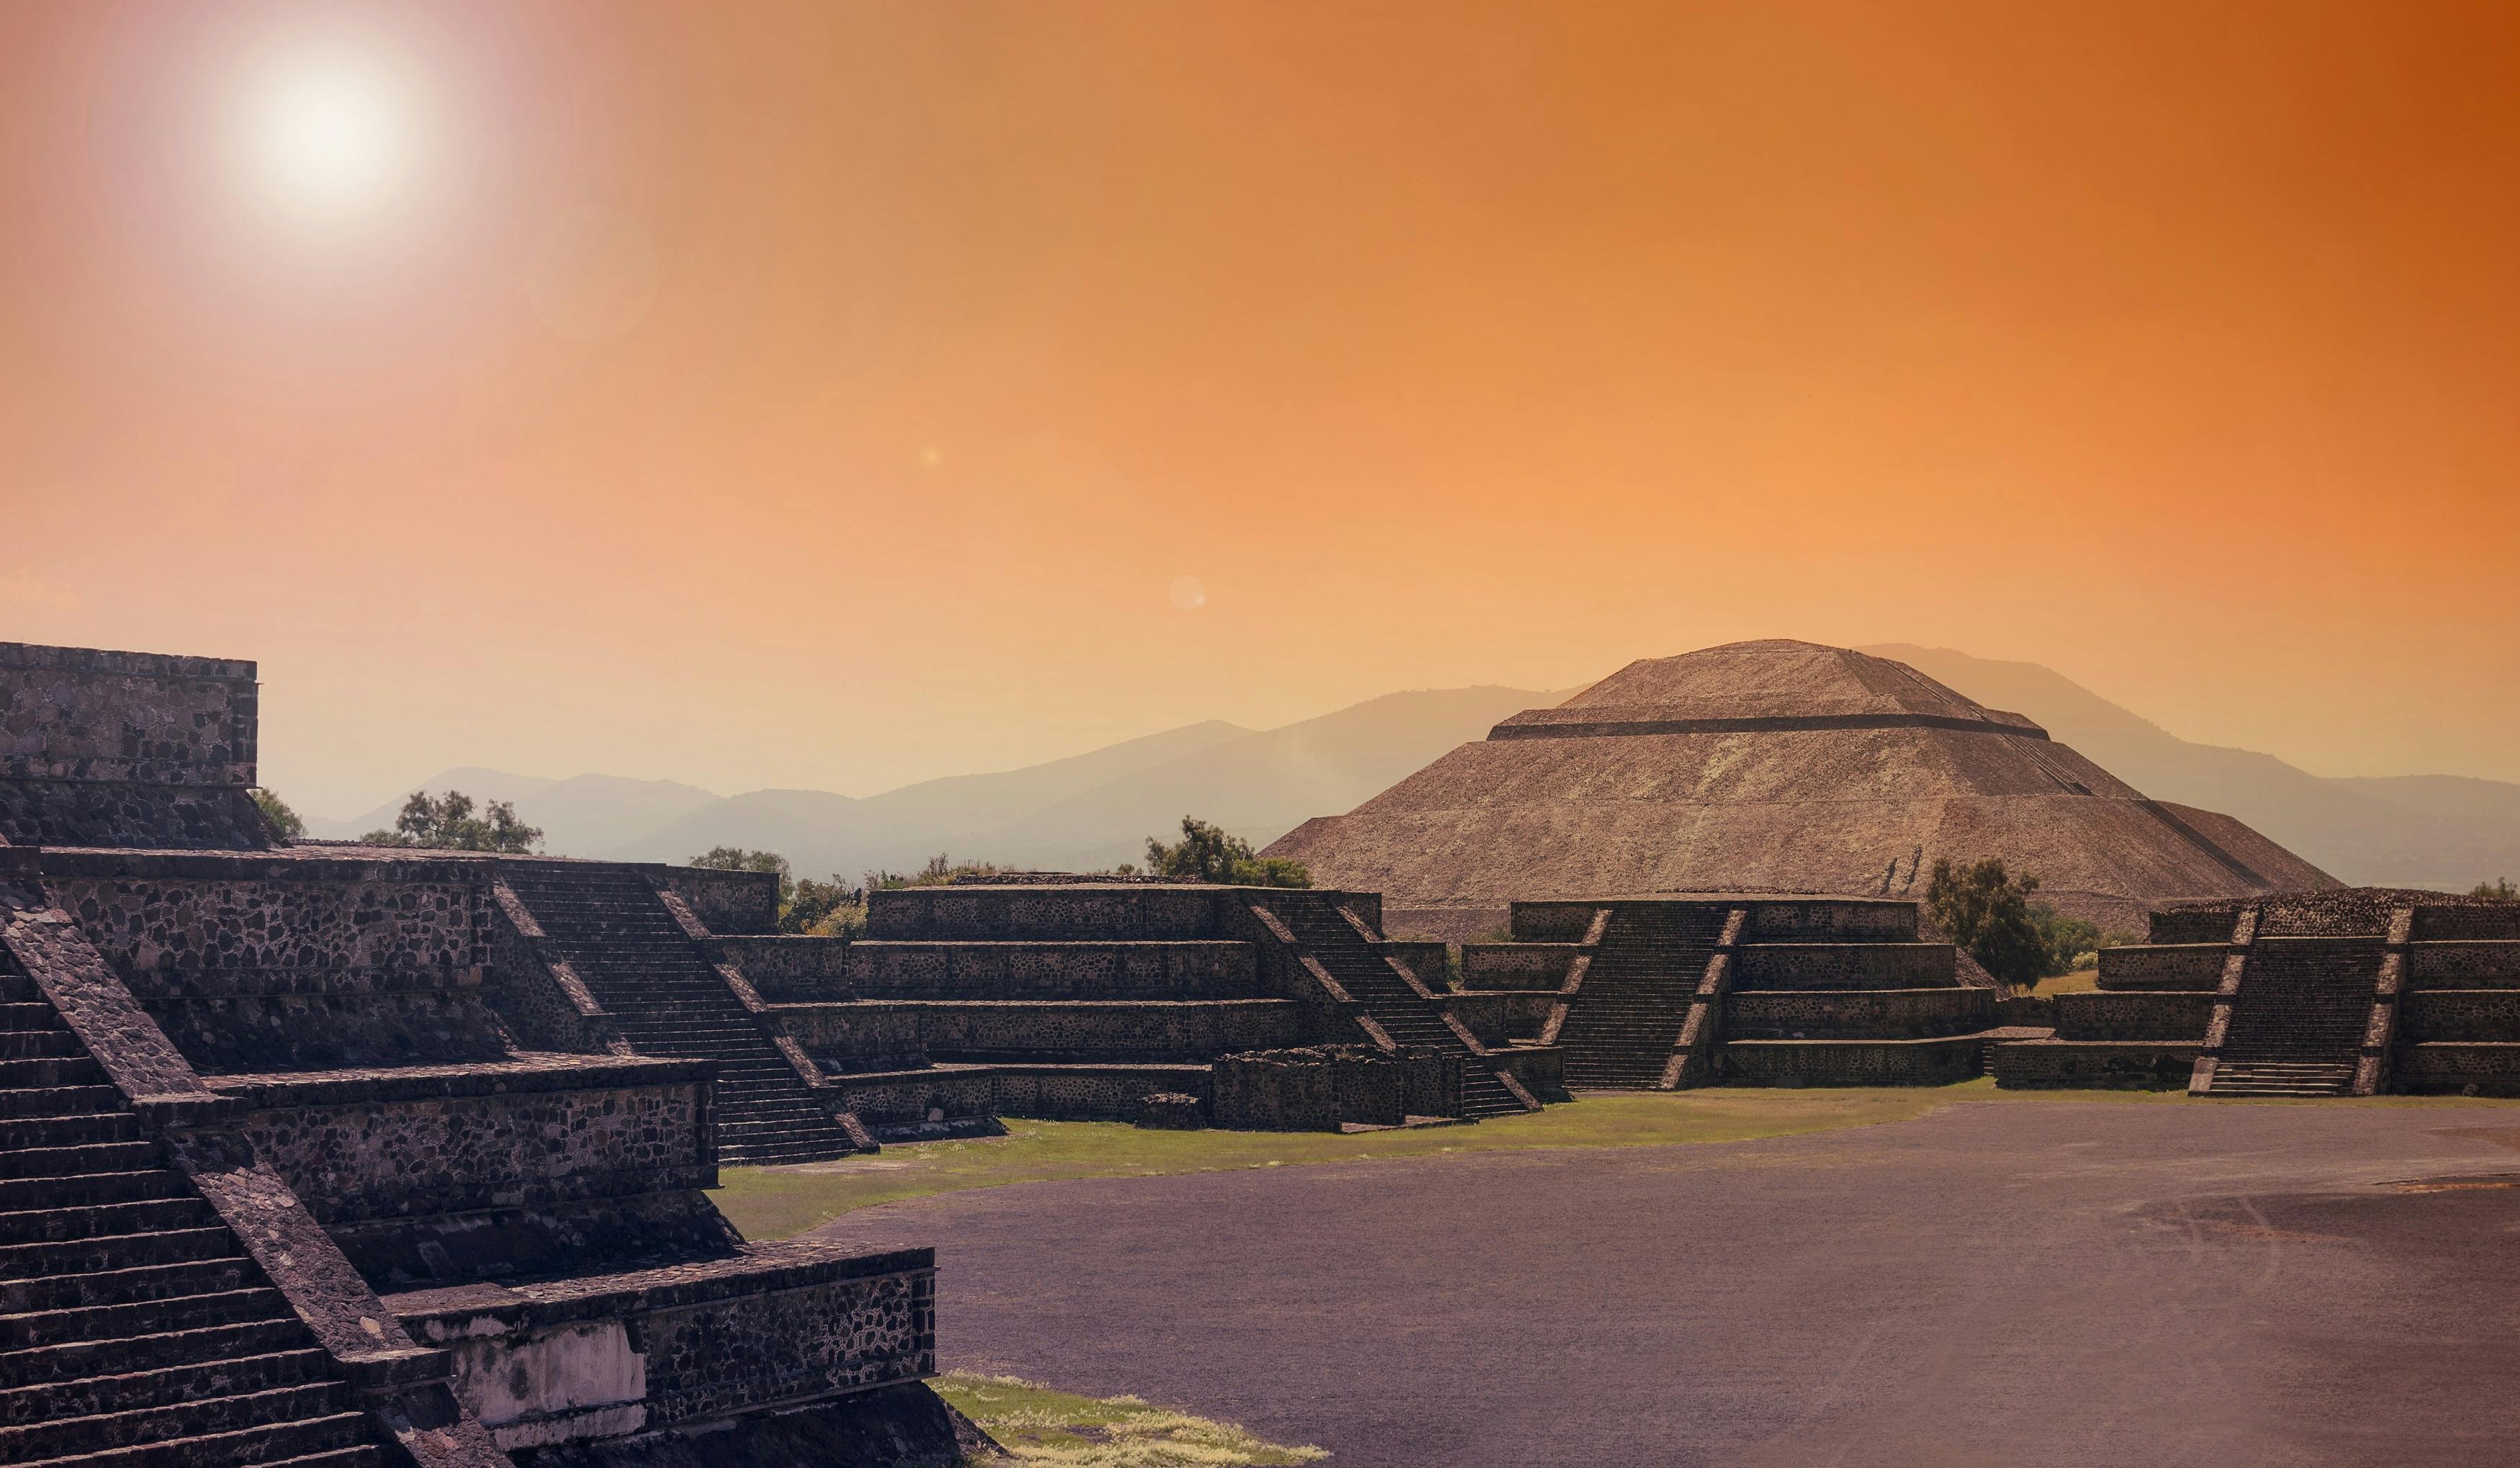 Popołudniowe zwiedzanie stanowiska archeologicznego w Teotihuacan